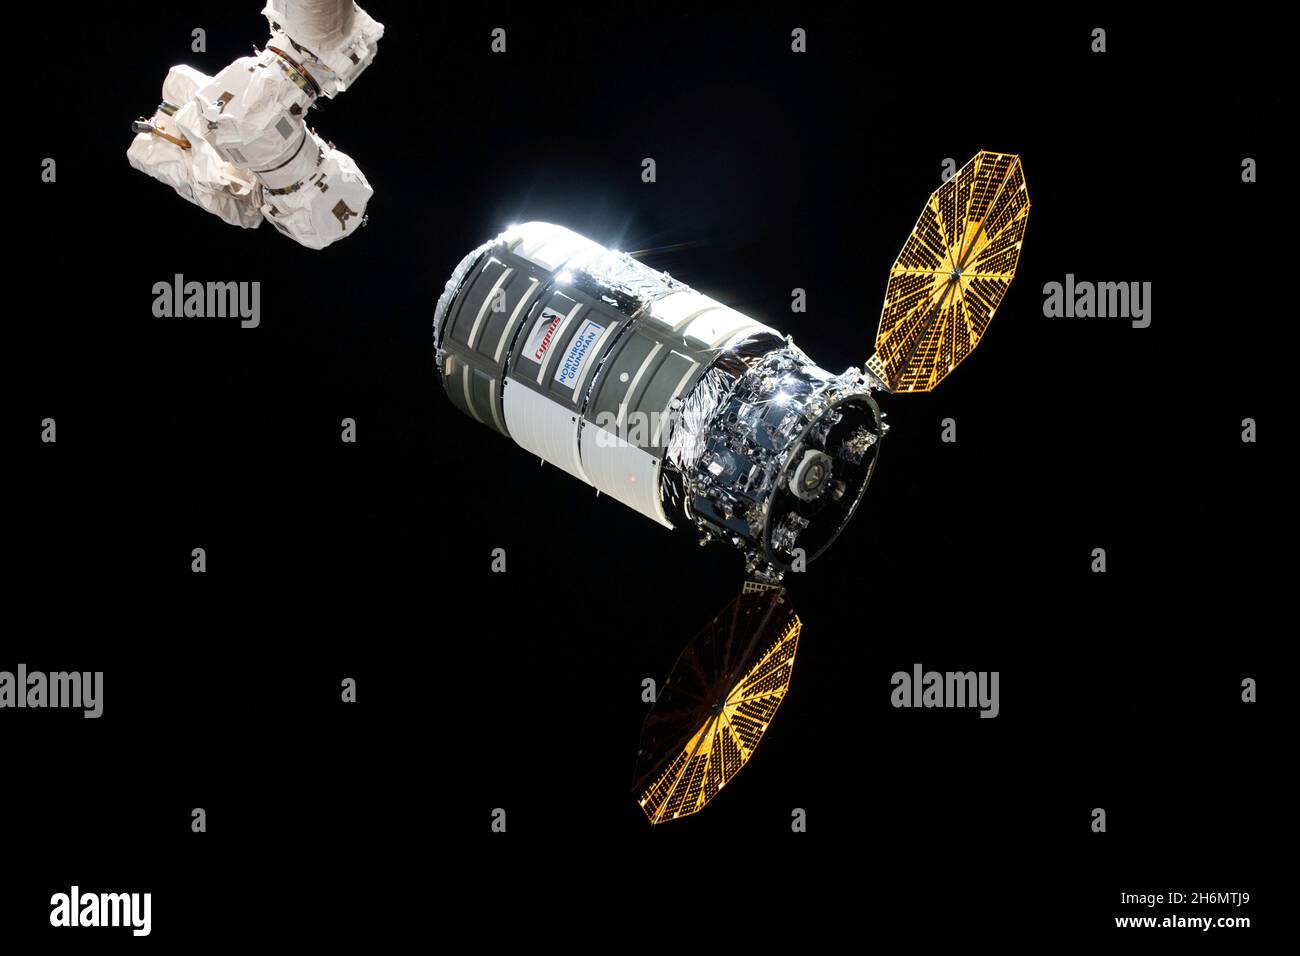 Cygnus arriva alla Stazione spaziale Internazionale (ISS) il 12 agosto 2021 dopo un lancio due giorni prima su un razzo Northrop Grumman Antares dalla struttura di volo di NASAs Wallops sull'isola di Wallops, Virginia. È la companys missione commerciale di riapprovvigionamento di servizi alla stazione spaziale per la NASA. Northrop Grumman nominò la navicella spaziale dopo l'astronauta della NASA Ellison Onizuka, il primo astronauta americano asiatico. Cygnus sarà deorbita mercoledì 15 dicembre 2021, a seguito di un motore deorbita che spara per impostare un reingresso distruttivo in cui la navicella spaziale, riempito di rifiuti la stazione spaziale cre Foto Stock